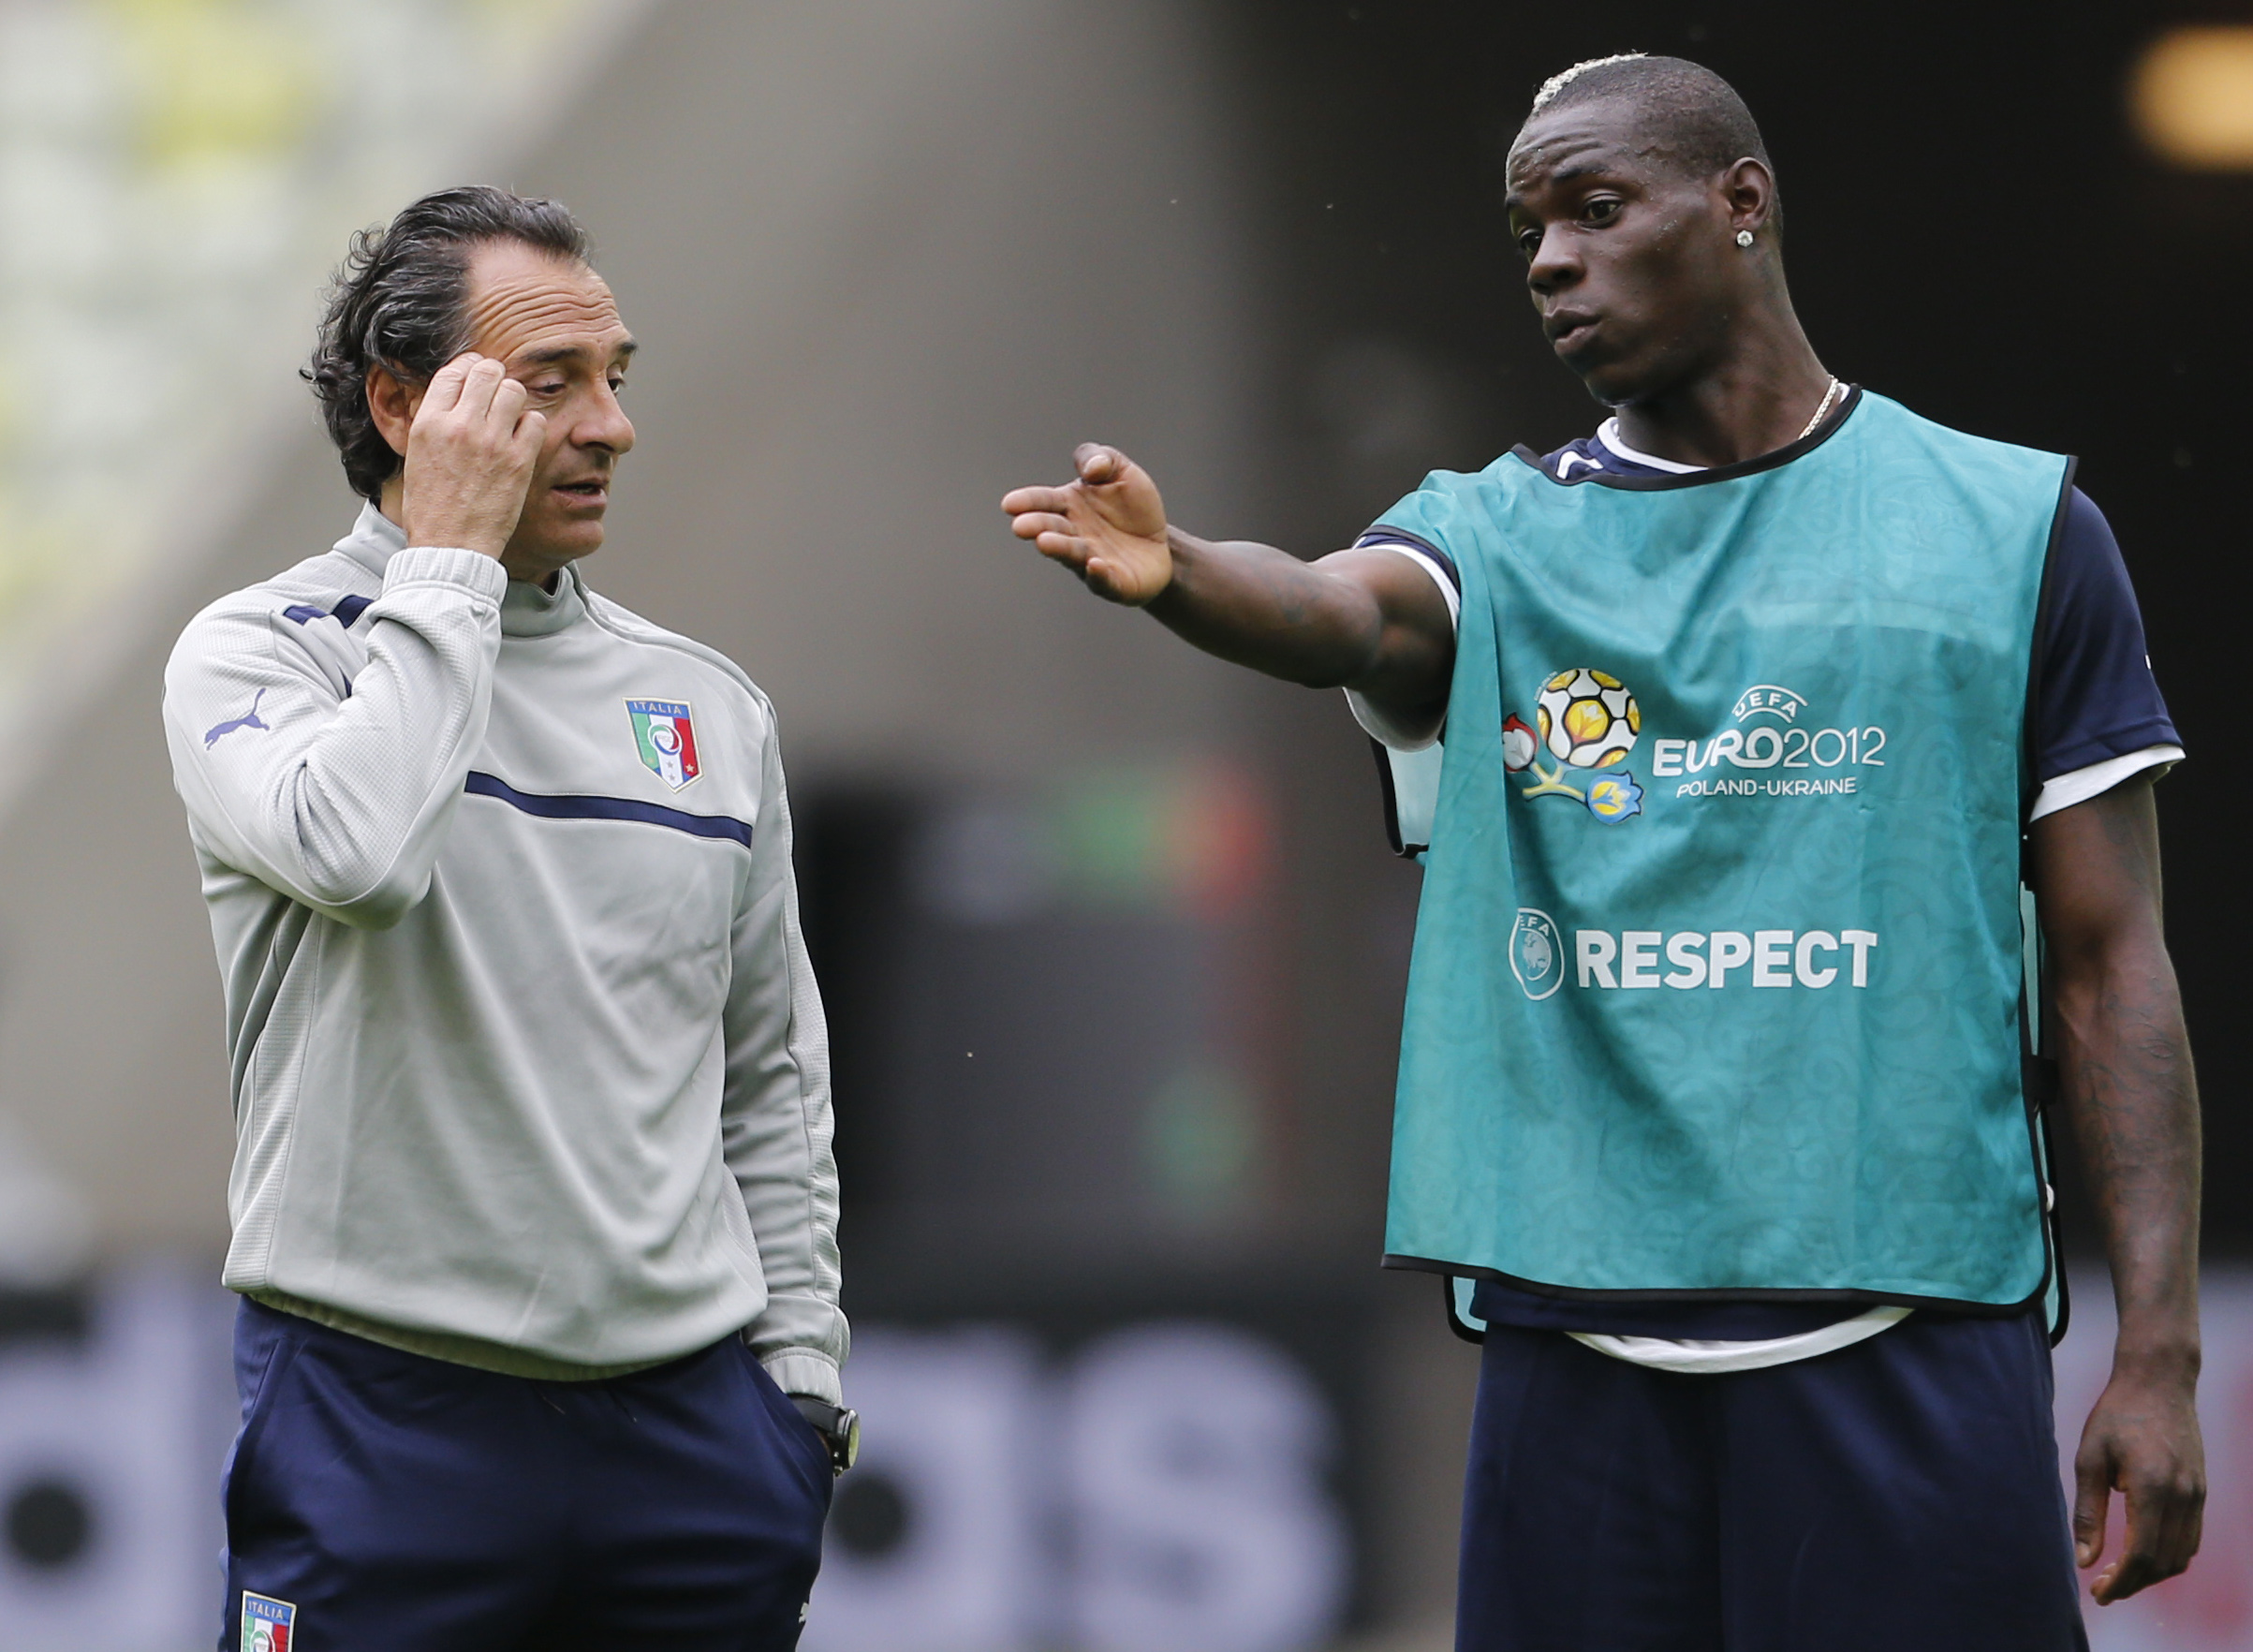 Prandelli tänker gå ut på planen och krama om Balotelli om han bli utsatt för rasism.